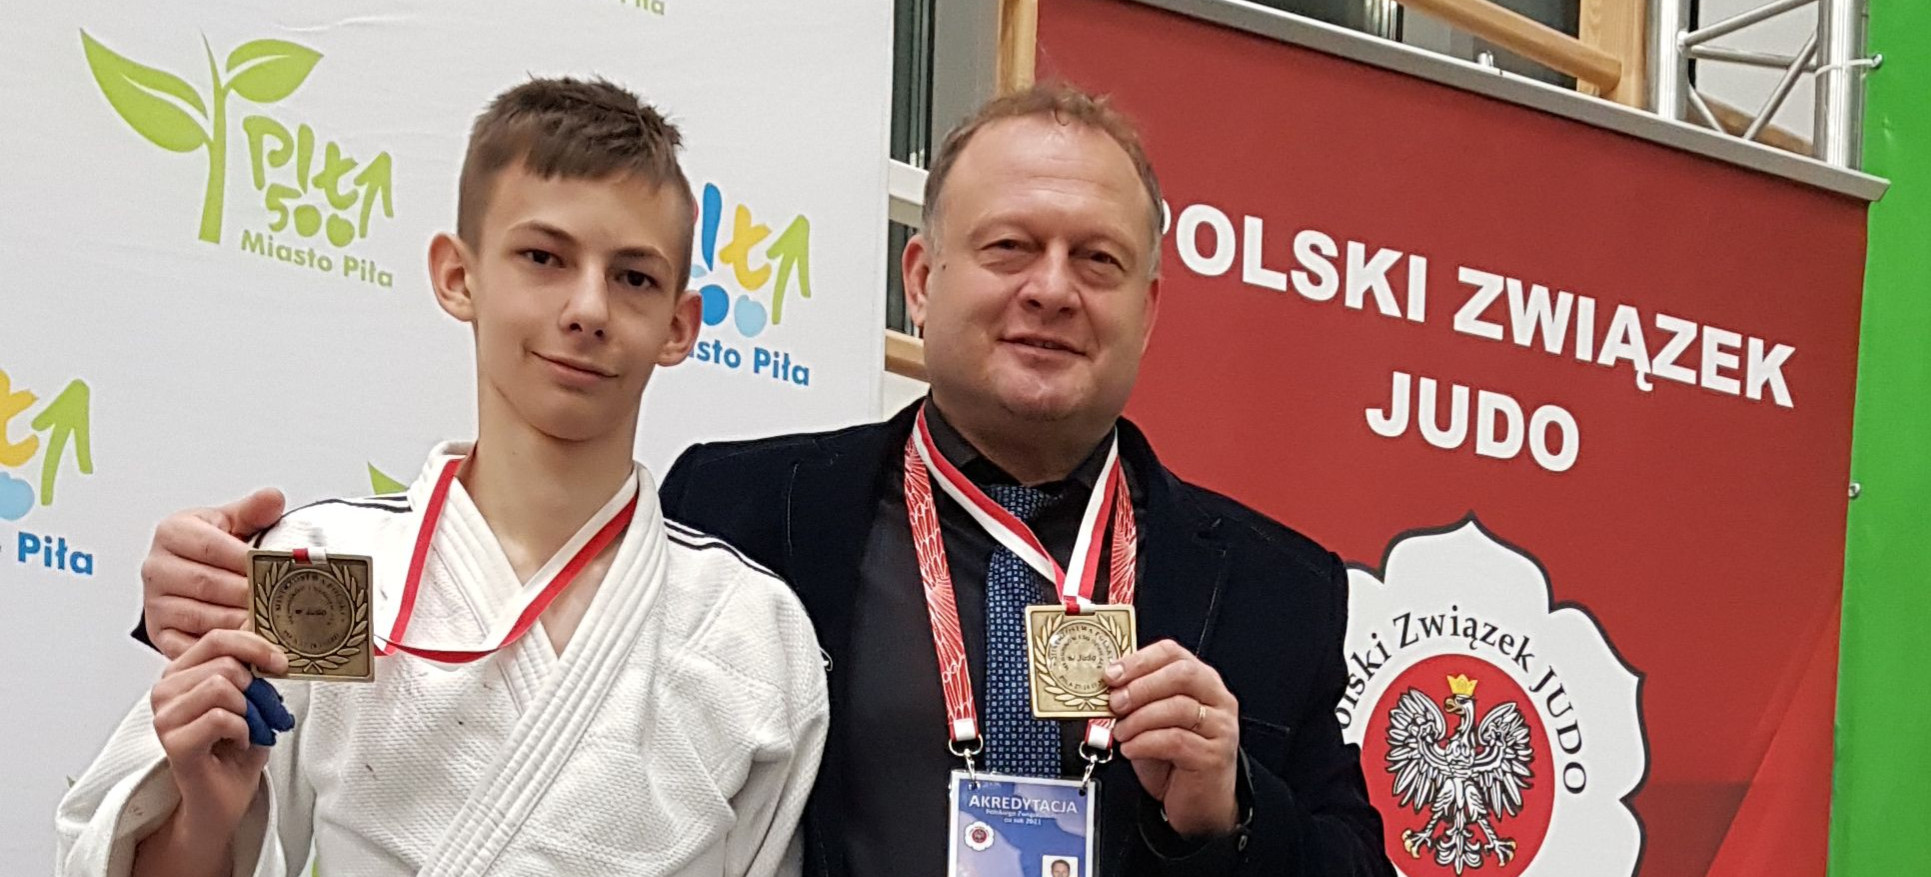 Kolejny Mistrz Polski w Judo z Millenium Rzeszów! (FOTO)